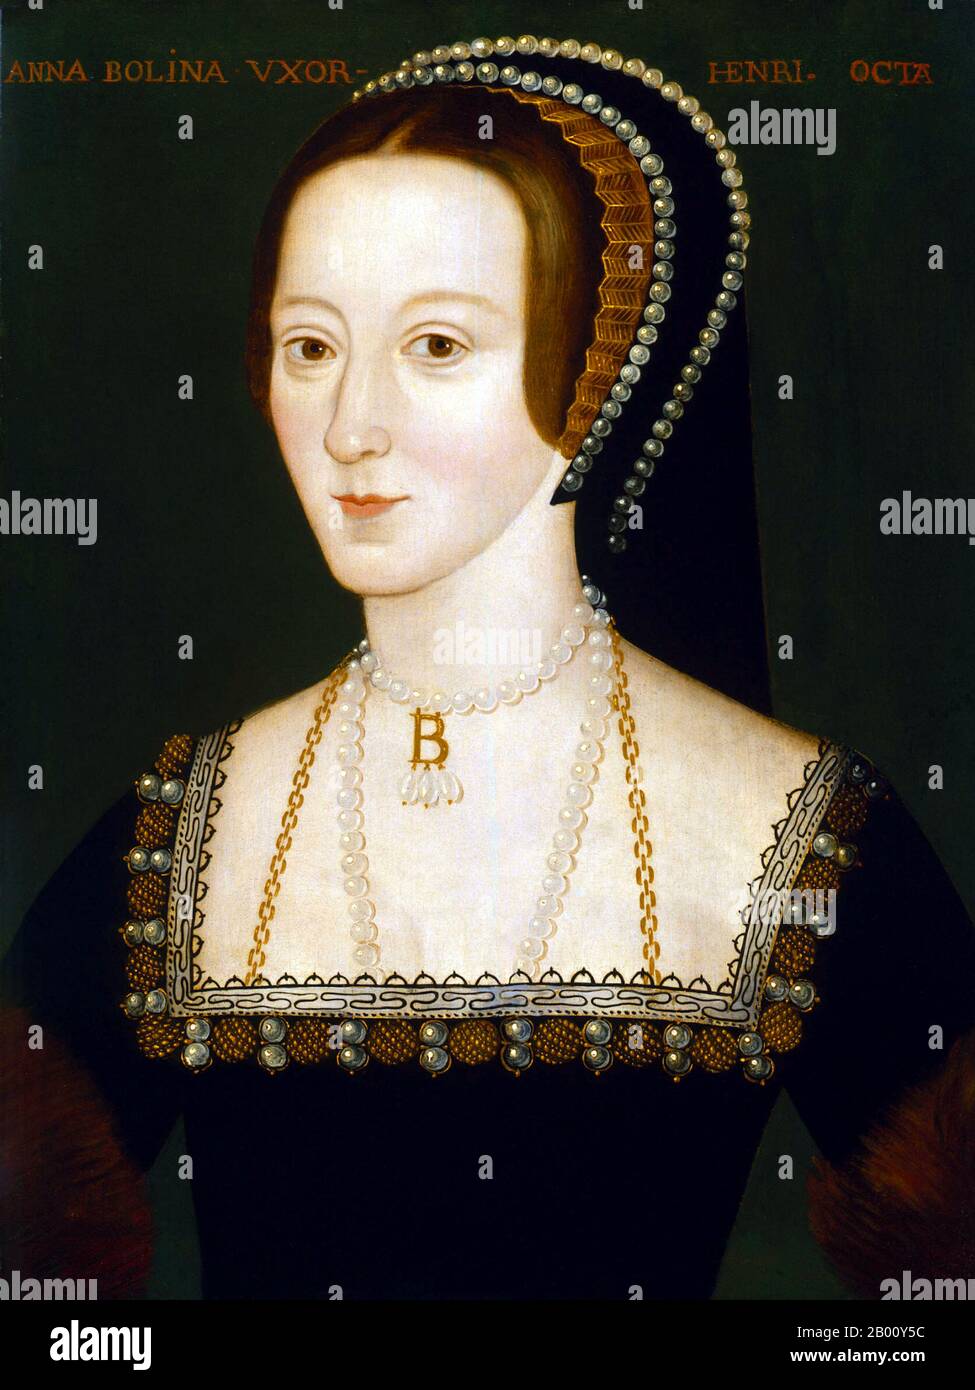 England: Anne Boleyn (ca. 1501/1507 – 19. Mai 1536), Königin von England (1533-1536) und zweite Ehefrau von Heinrich VIII. Von England. Öl auf Tafelbild von einem unbekannten Künstler,. 1533-1536. Anne wurde am 1. Juni 1533 zur Königin von England gekrönt. Am 7. September gebar sie die zukünftige Elisabeth I. von England. Zu Heinrichs Unmut jedoch versagte sie, einen männlichen Erben zu produzieren. Henry war nicht völlig entmutigt, denn er sagte, dass er Elizabeth liebte und dass ein Sohn sicherlich folgen würde. Drei Fehlgeburten folgten jedoch, und bis März 1536, Henry war umwerben Jane Seymour. Sie wurde am 19. Mai enthauptet. Stockfoto